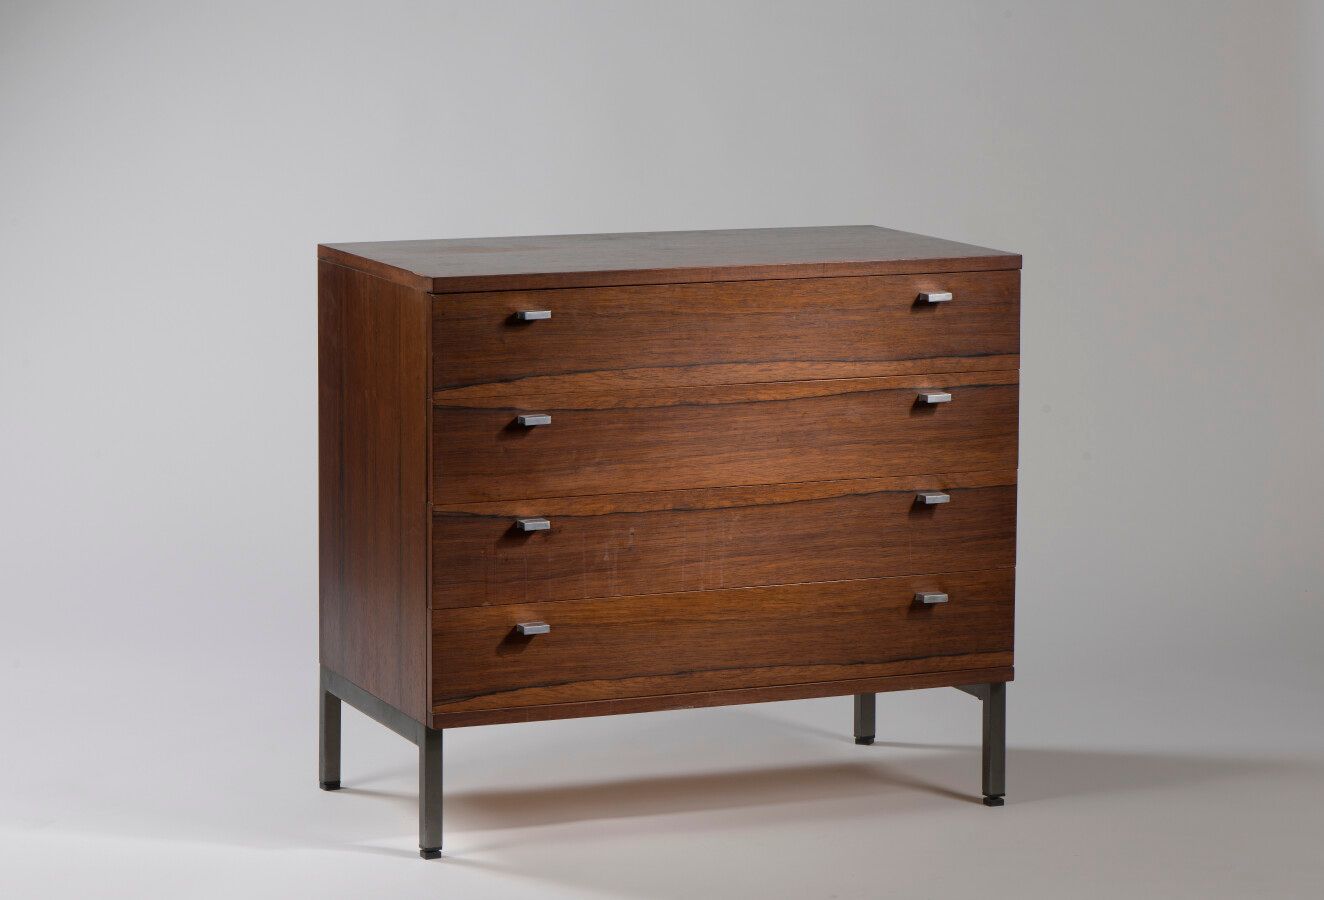 Null 1960年代的作品

四个抽屉的小柜子

紫檀木饰面



H.77 cm - D. 47,5 cm - W. 85 cm

使用条件